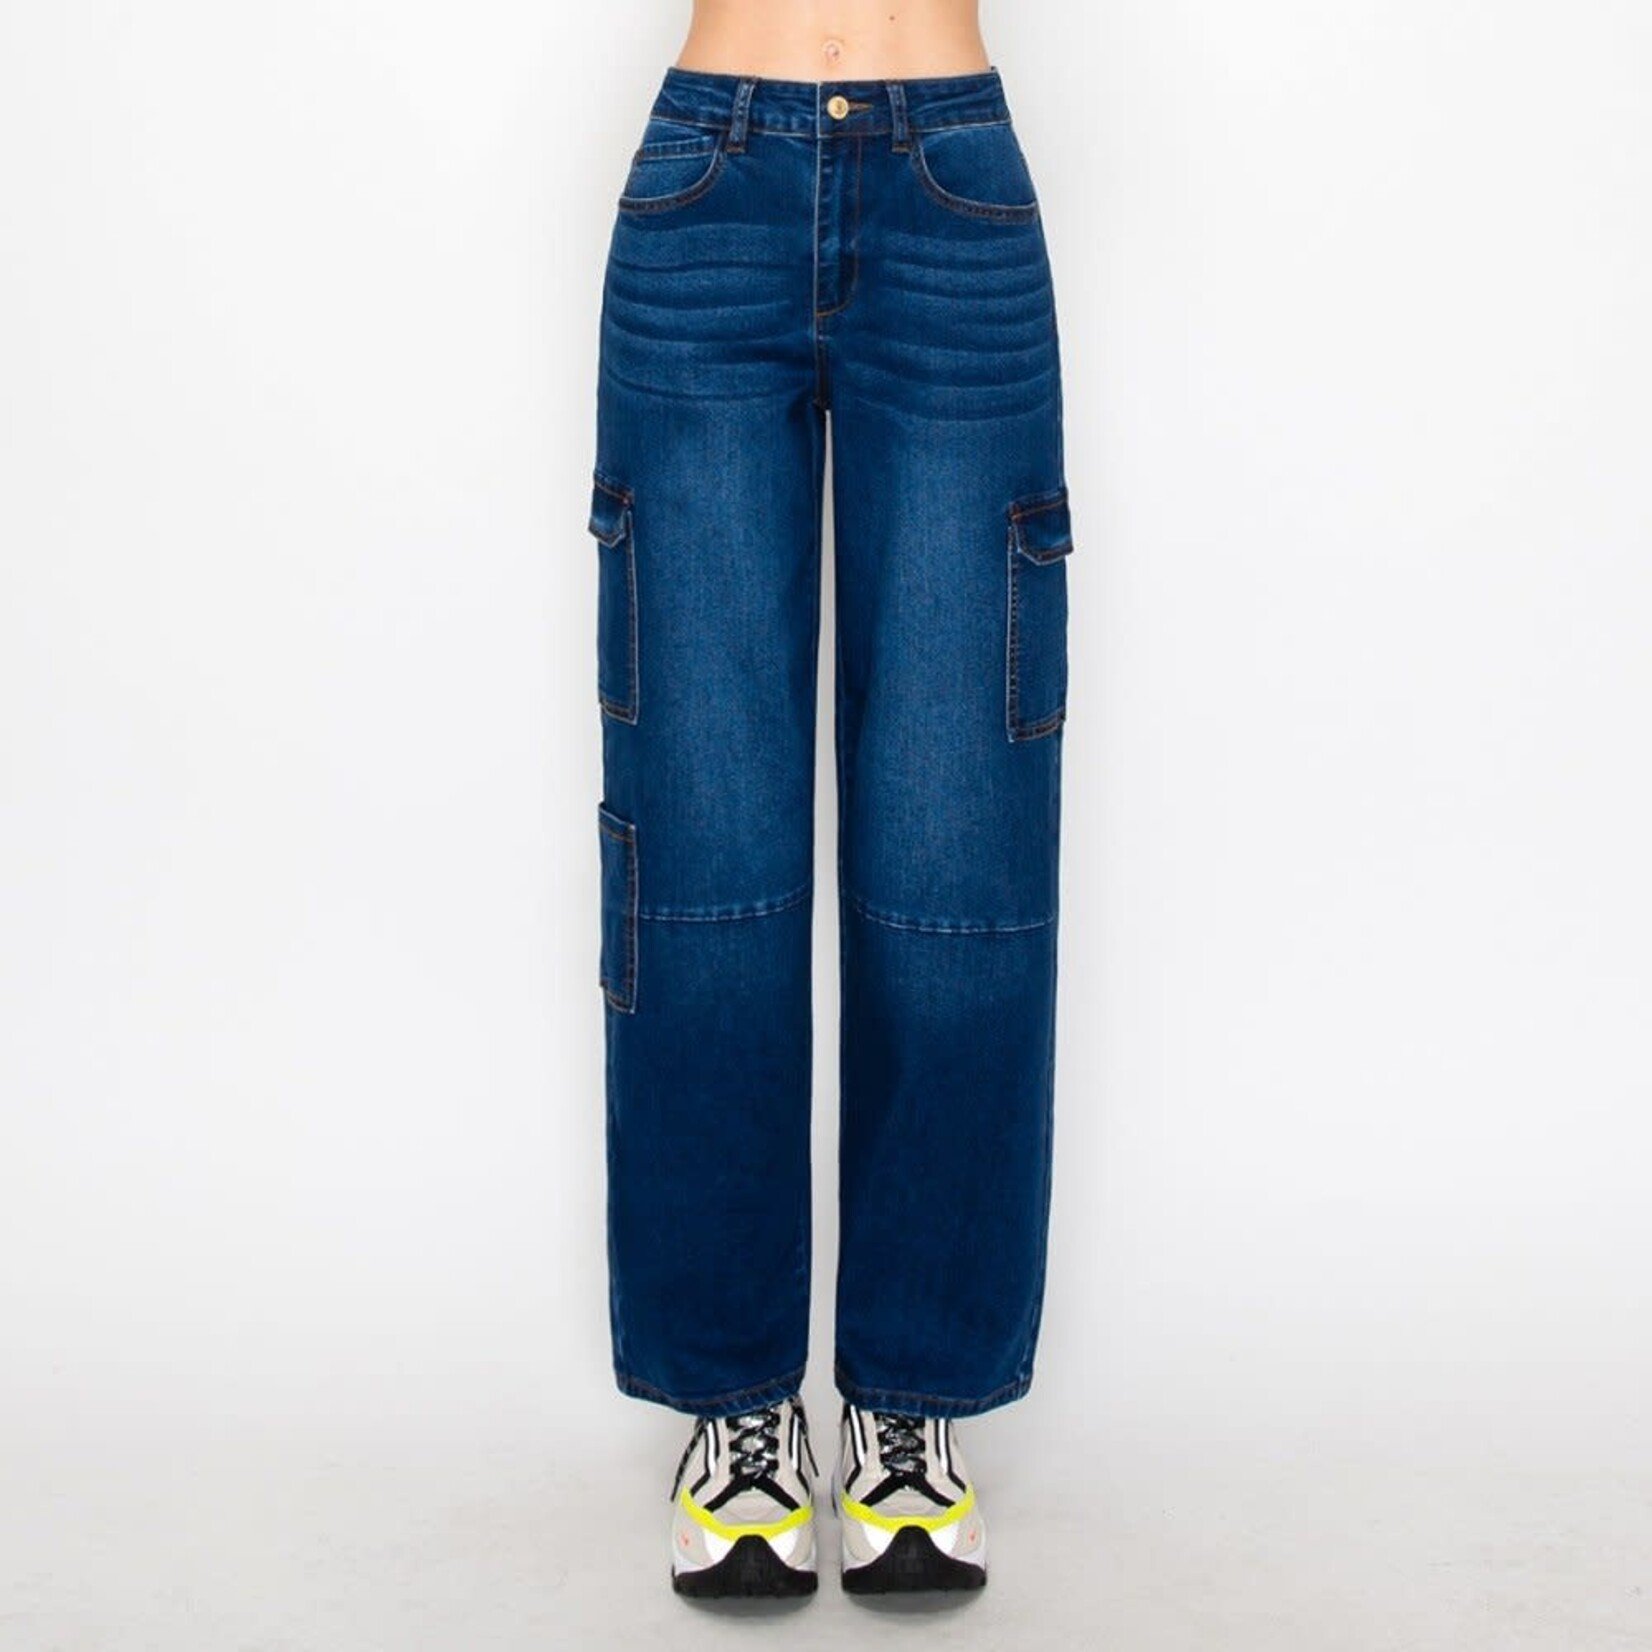 Wax Jeans Wax Jean - Women's Cargot Pocket Jean with Knee Cutline - 90336